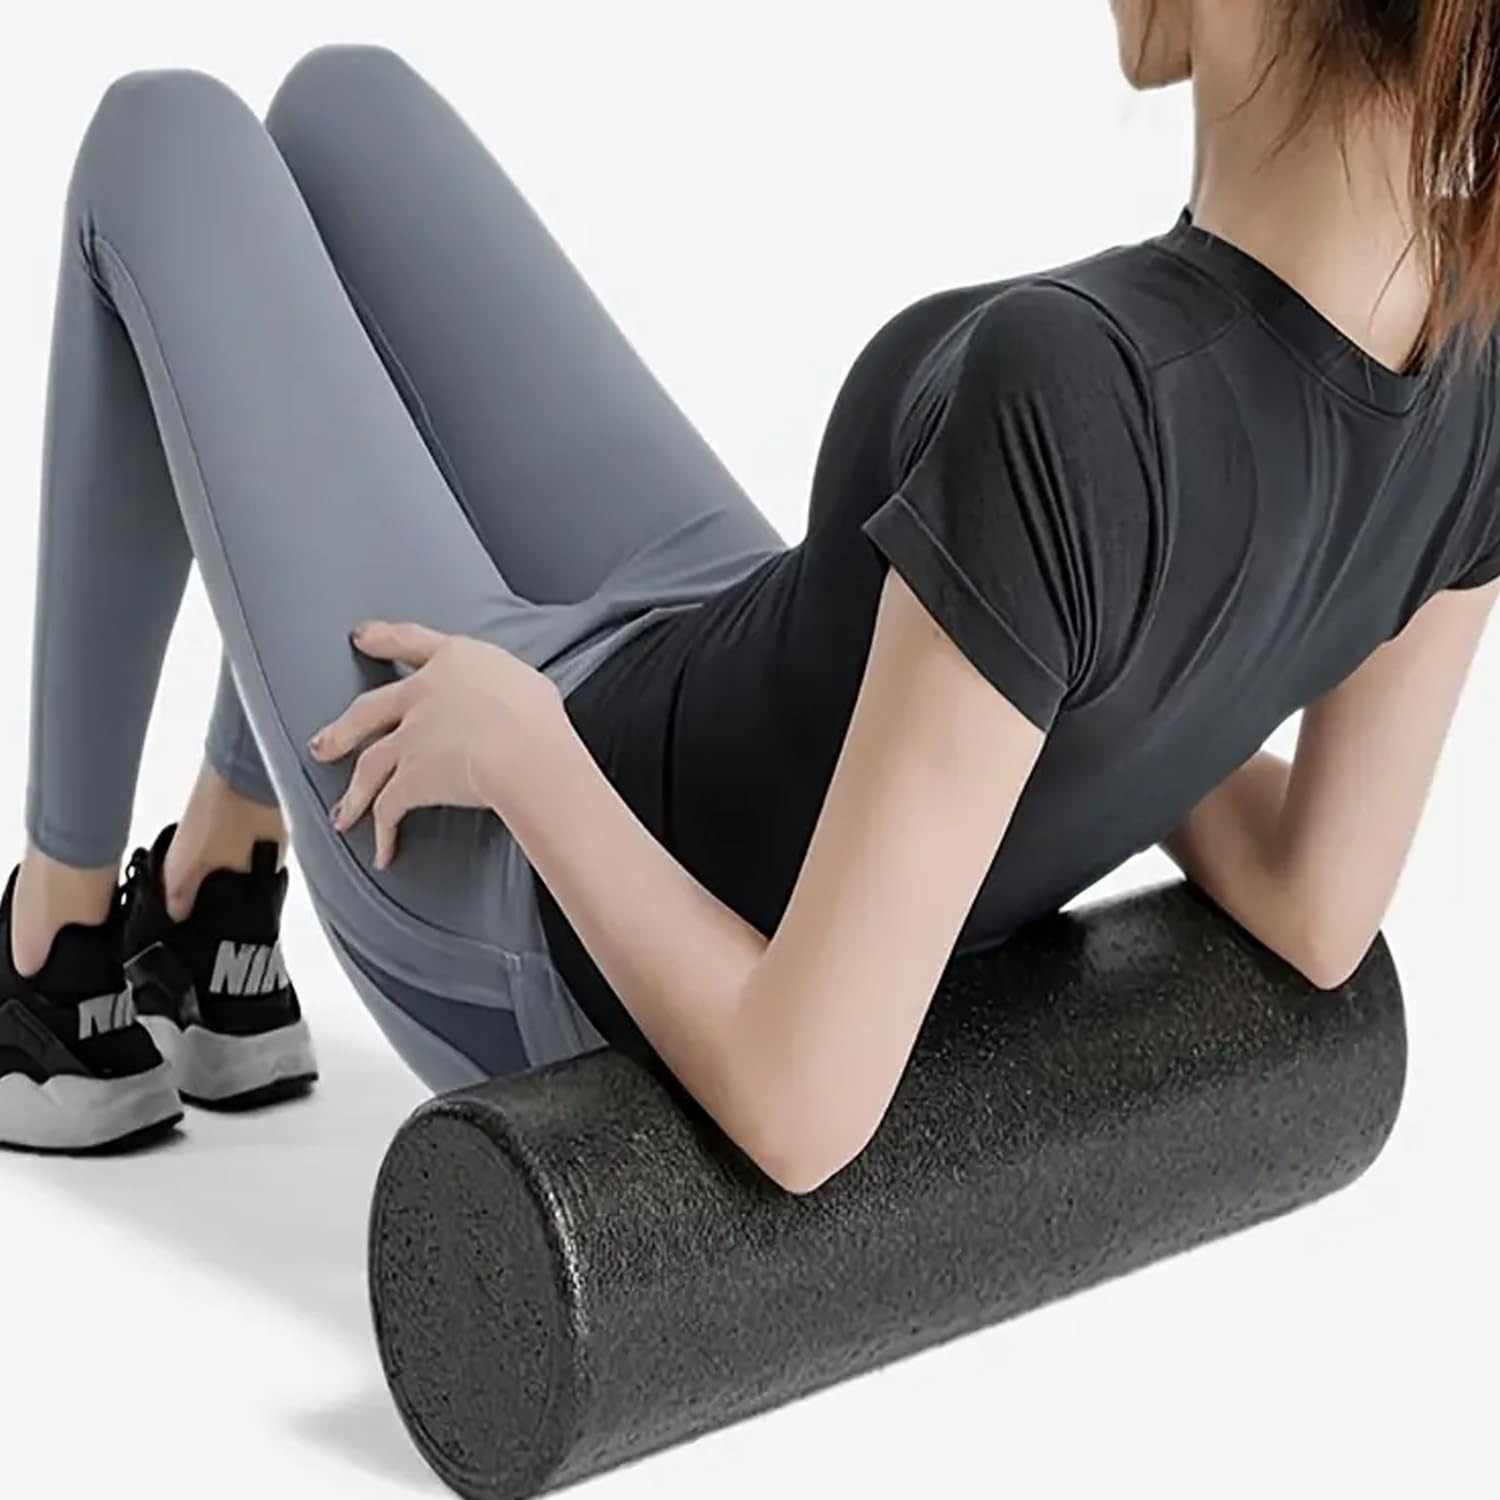 Kuber Industries Foam Roller For Exercise, Back Pain, Knee Pain (Black)